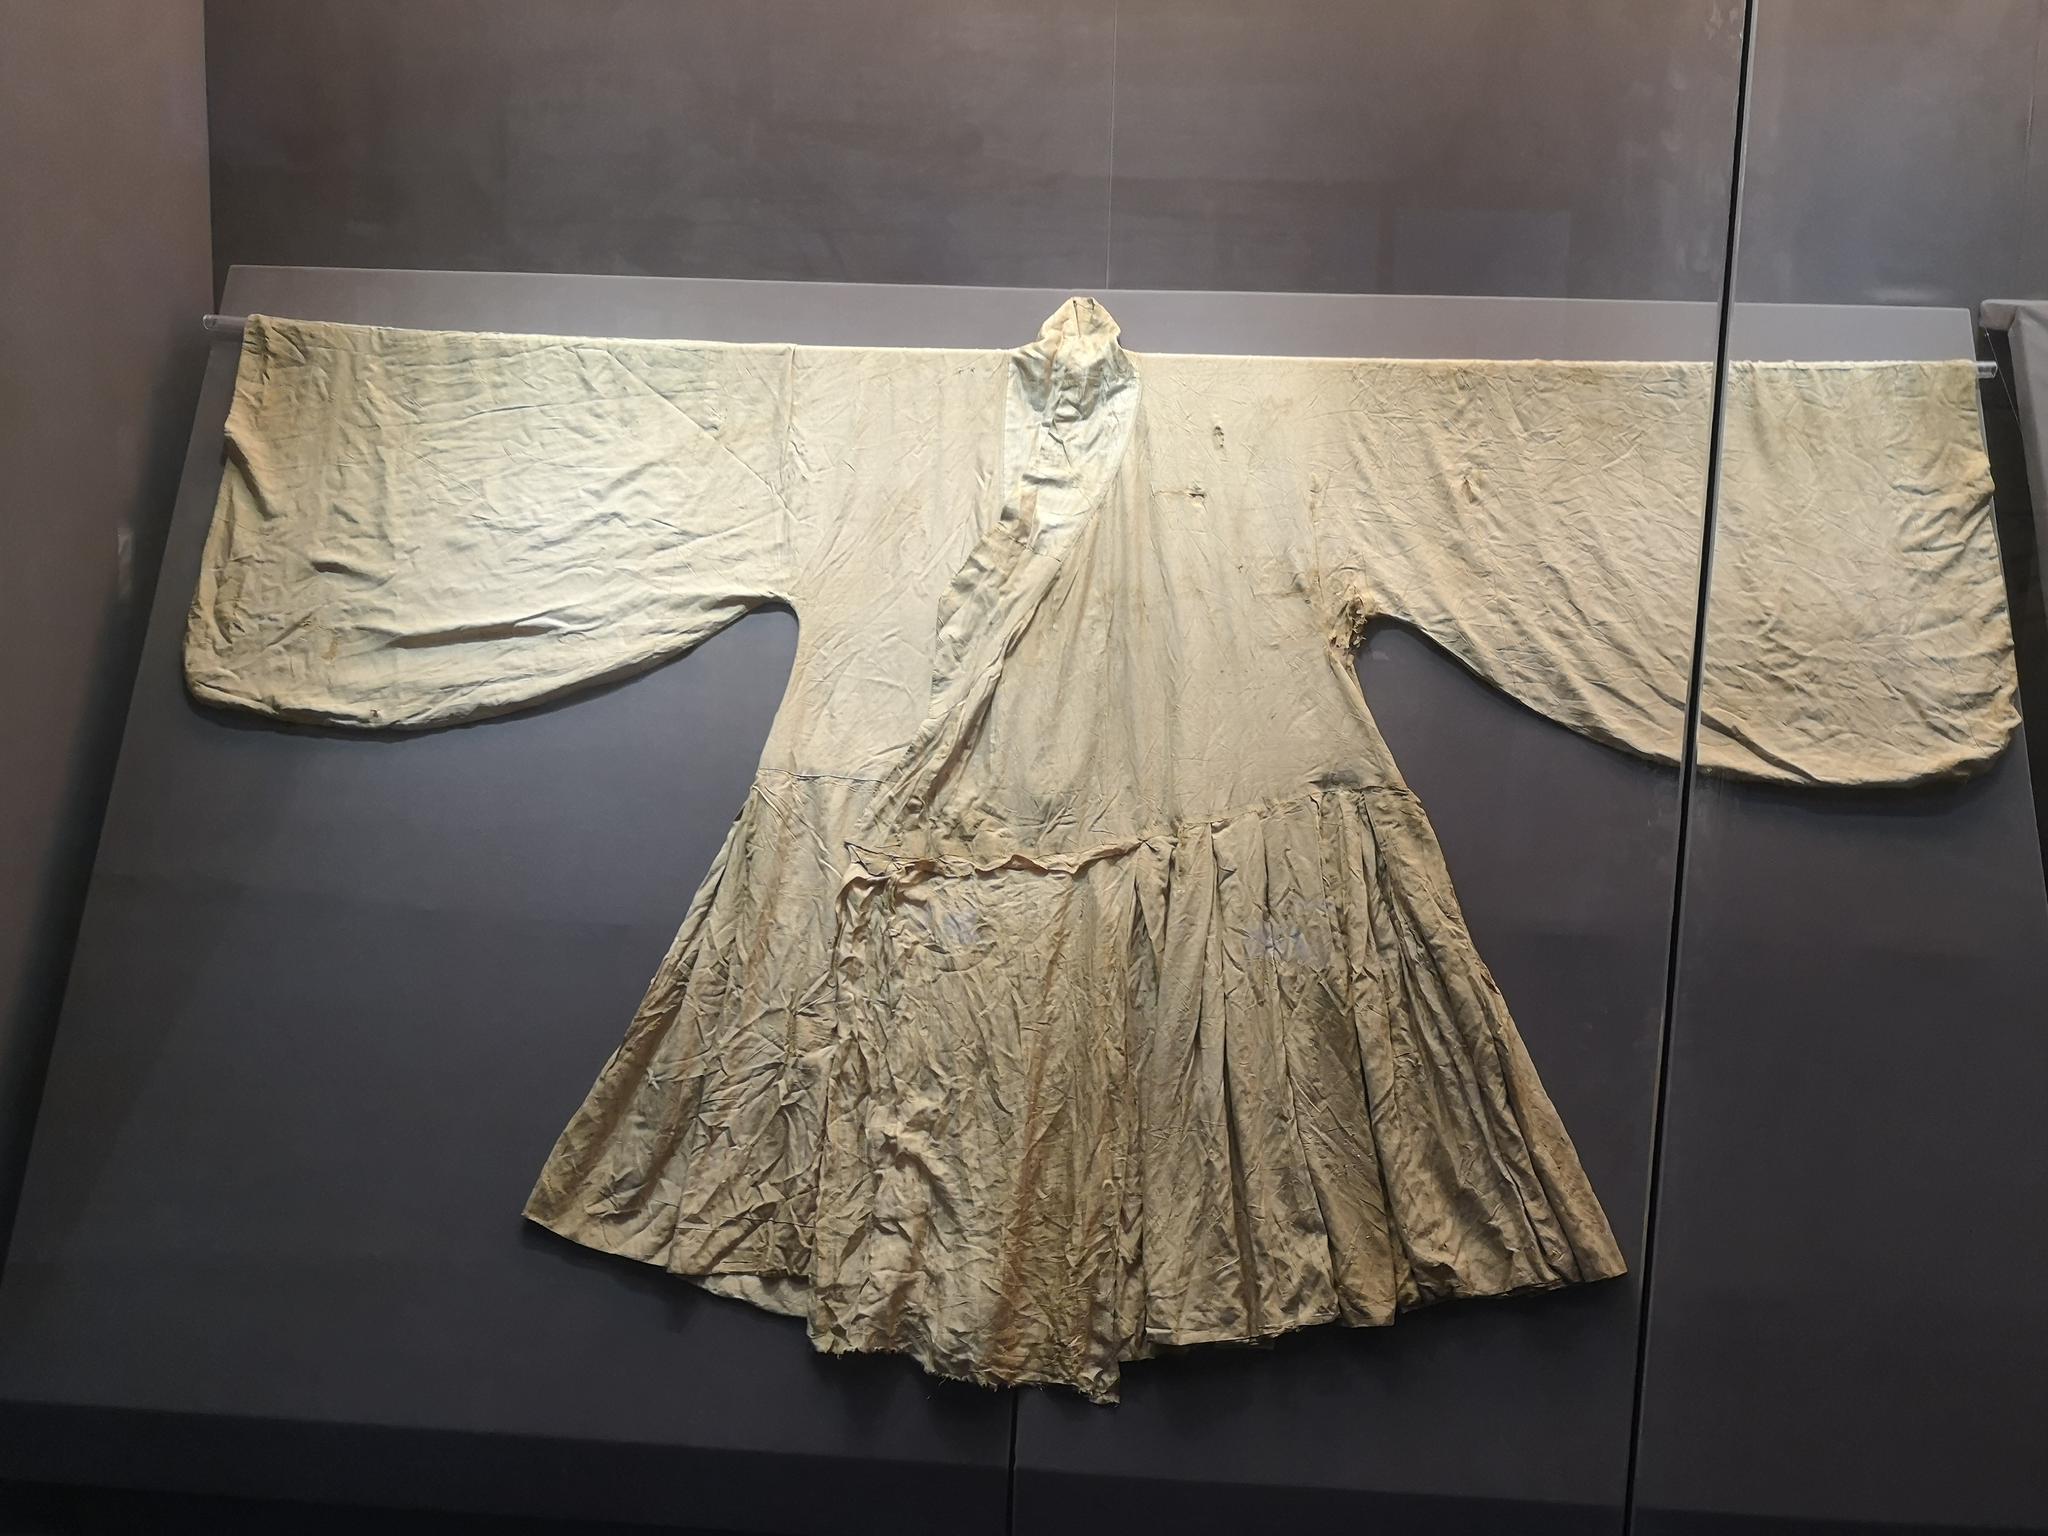 江苏泰州博物馆的明代服饰展,泰州的明墓出土了200多件完整的服饰